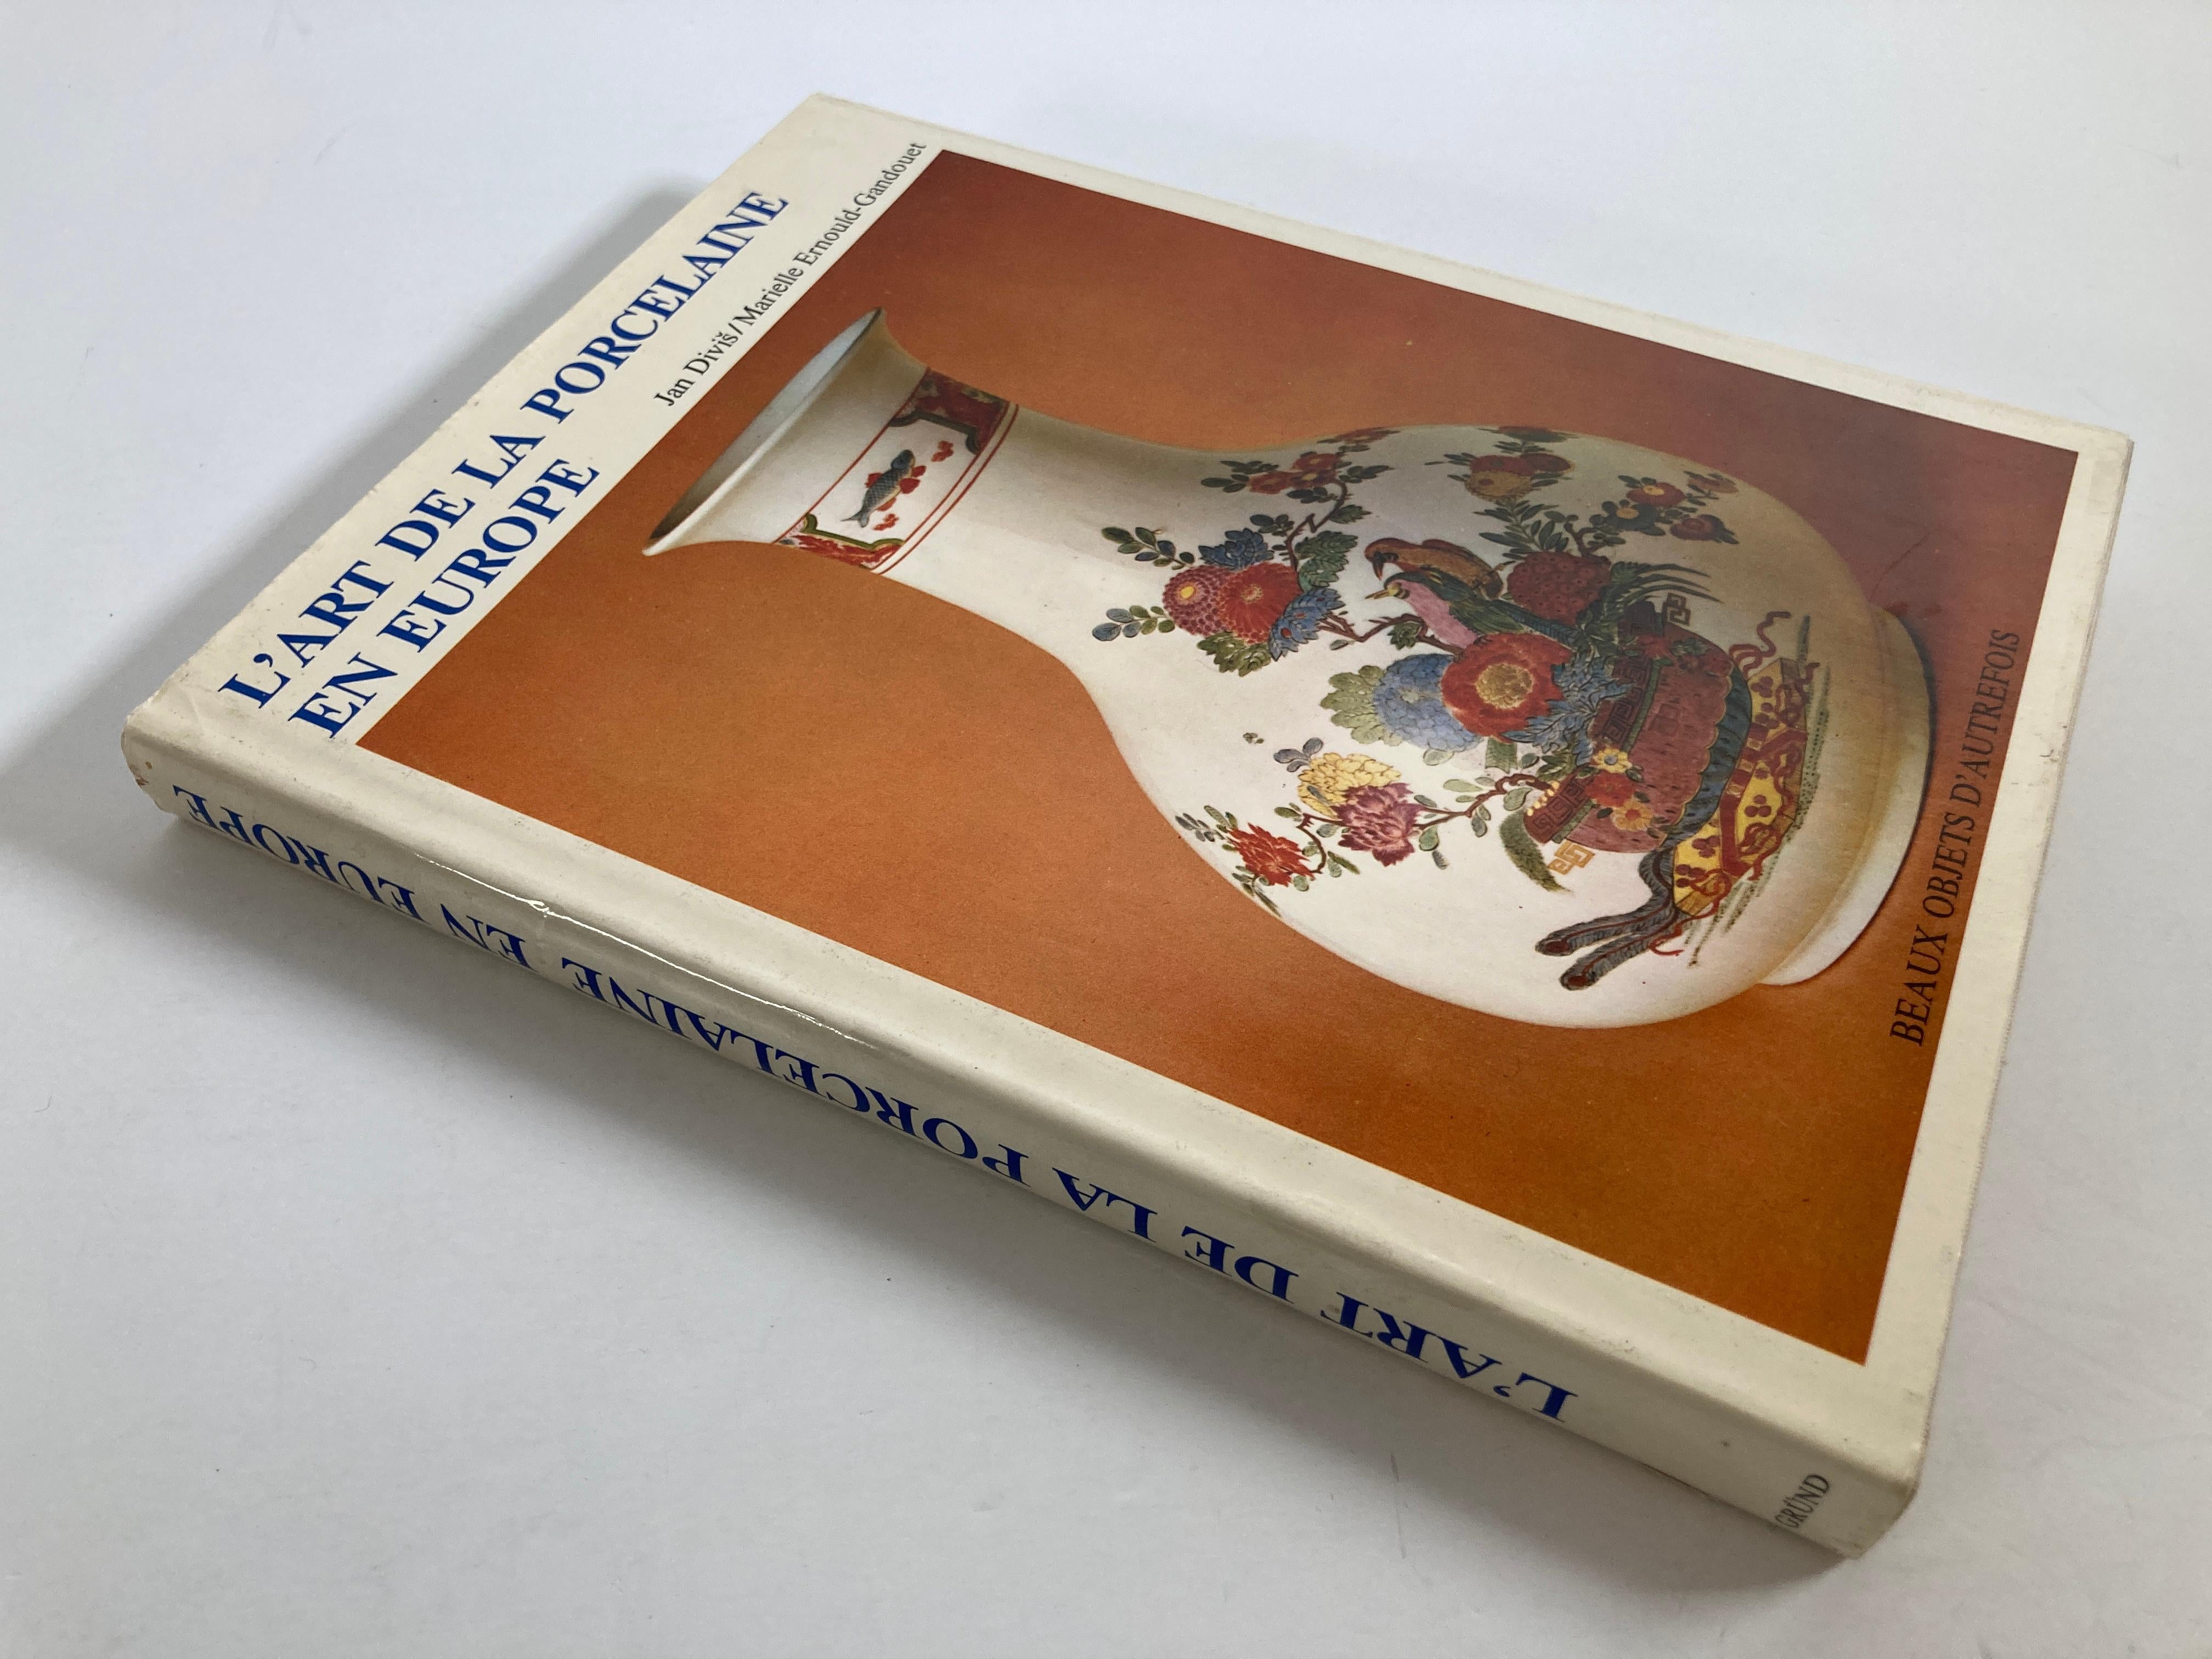 L'art de la porcelaine en europe (français) Hardcover - 1 janvier 1984
par Jan ; et Ernould-Gandouet Divis (Auteur)
L'art de la porcelaine en Europe, de beaux objets du passé.
Publié par GRUND, 1986
Editeur : Grund (1er janvier 1984)
Langue :